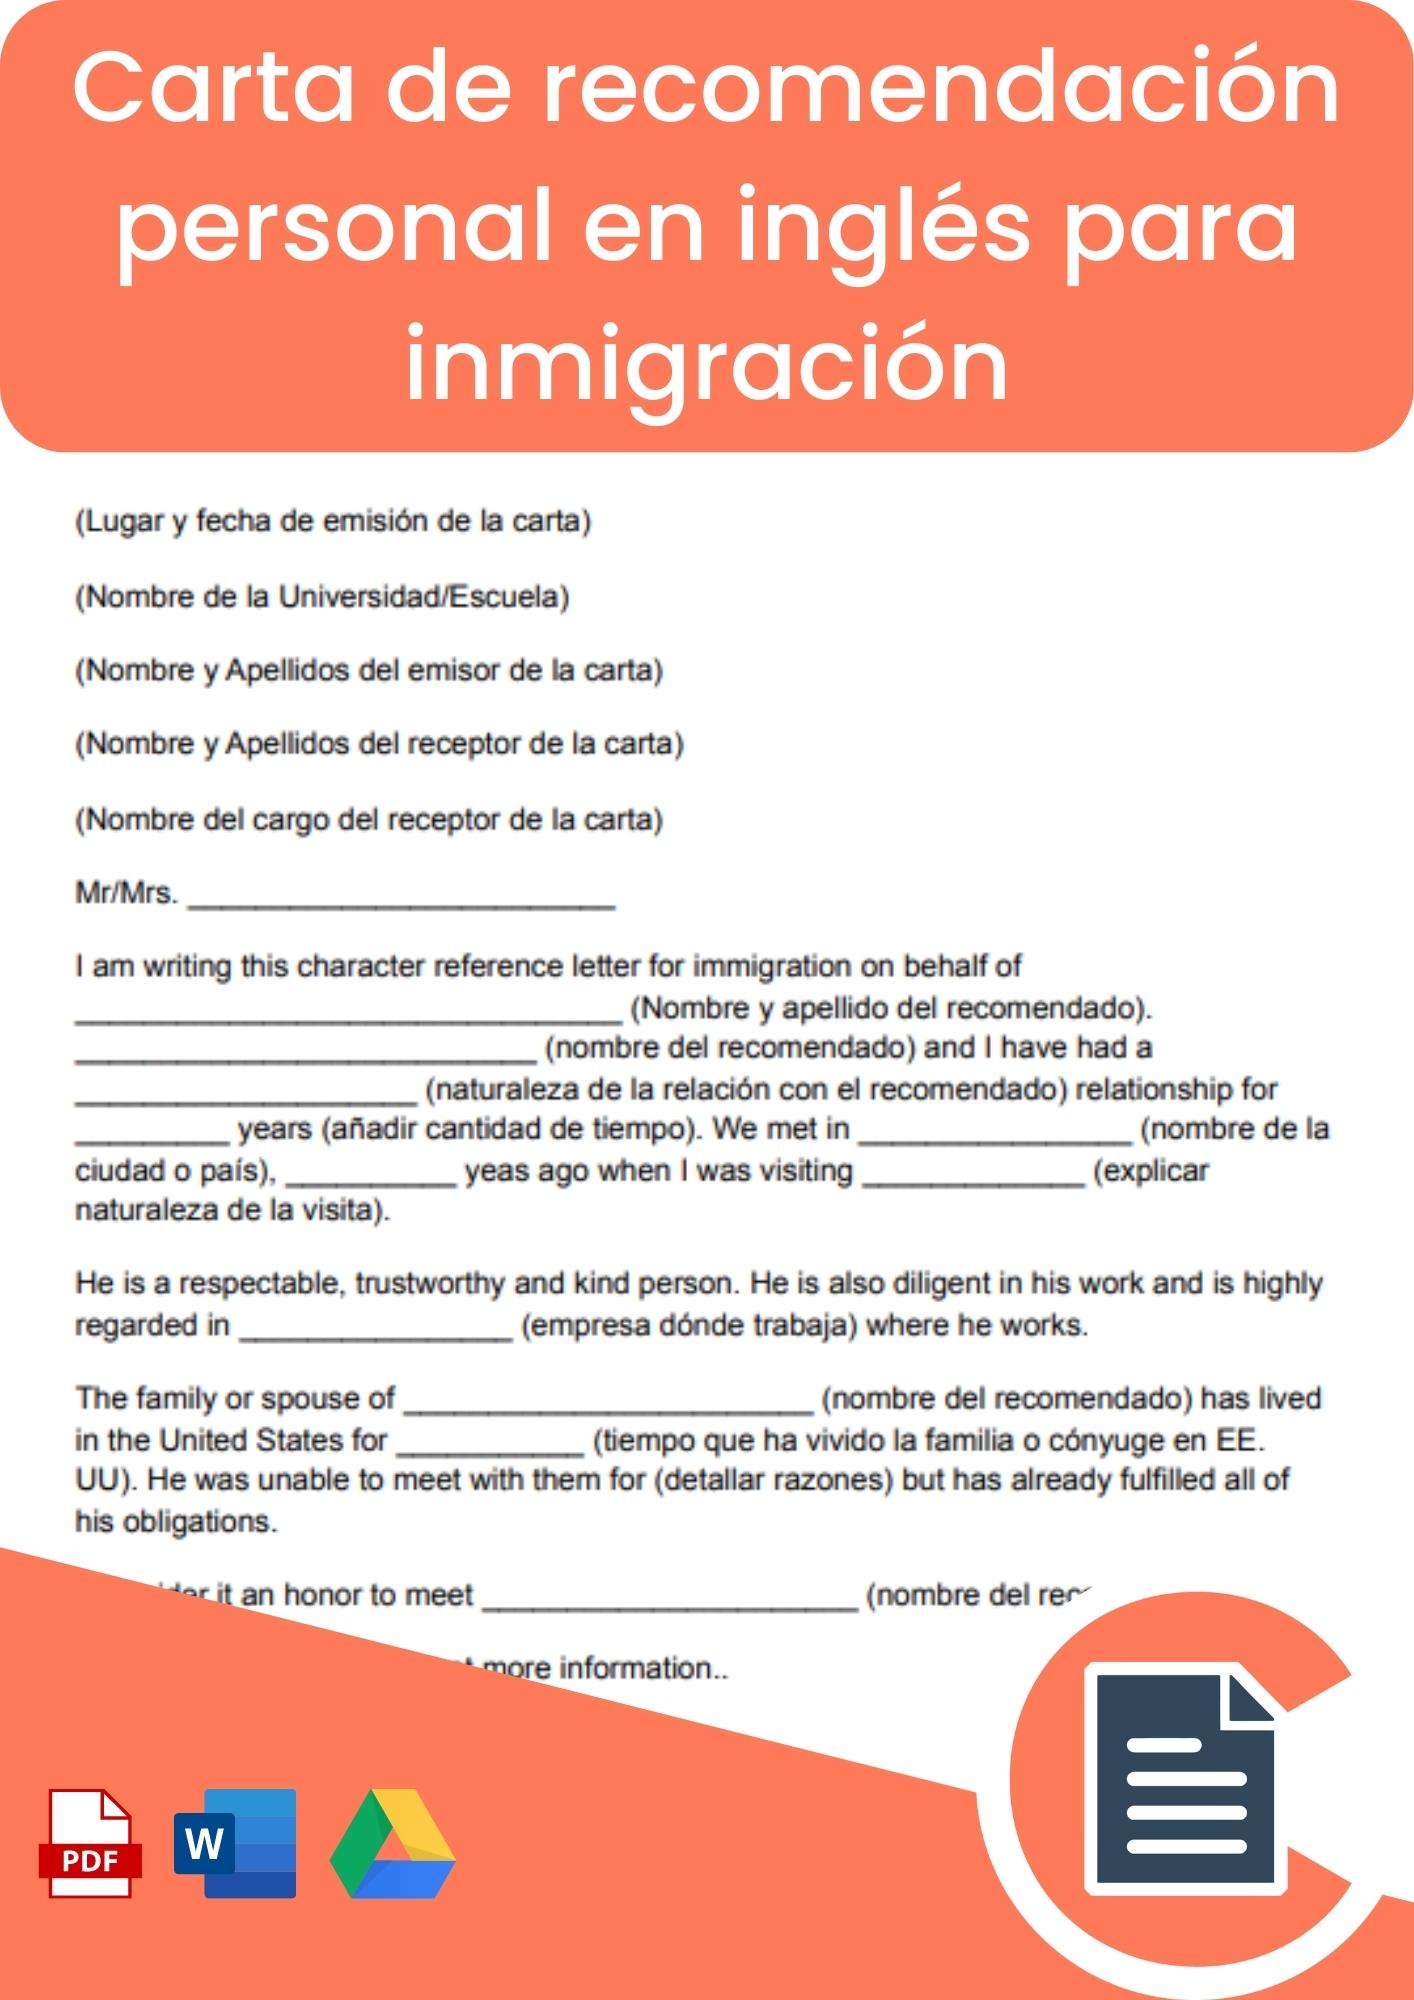 Carta de recomendación personal en inglés para inmigración